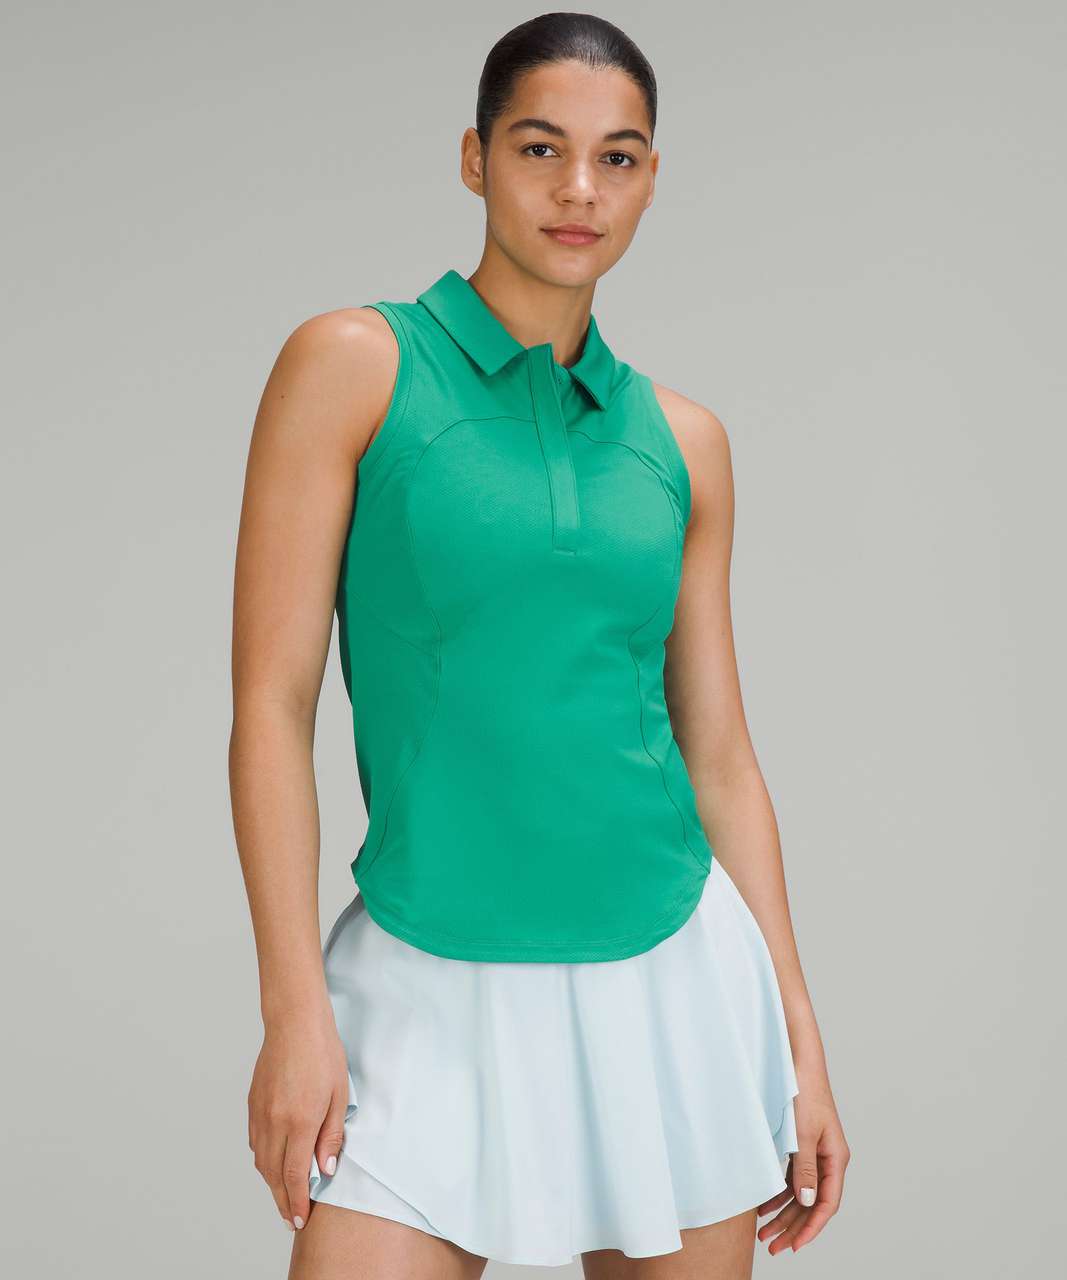 Lululemon Quick-Dry Sleeveless Polo Shirt - Maldives Green - lulu fanatics